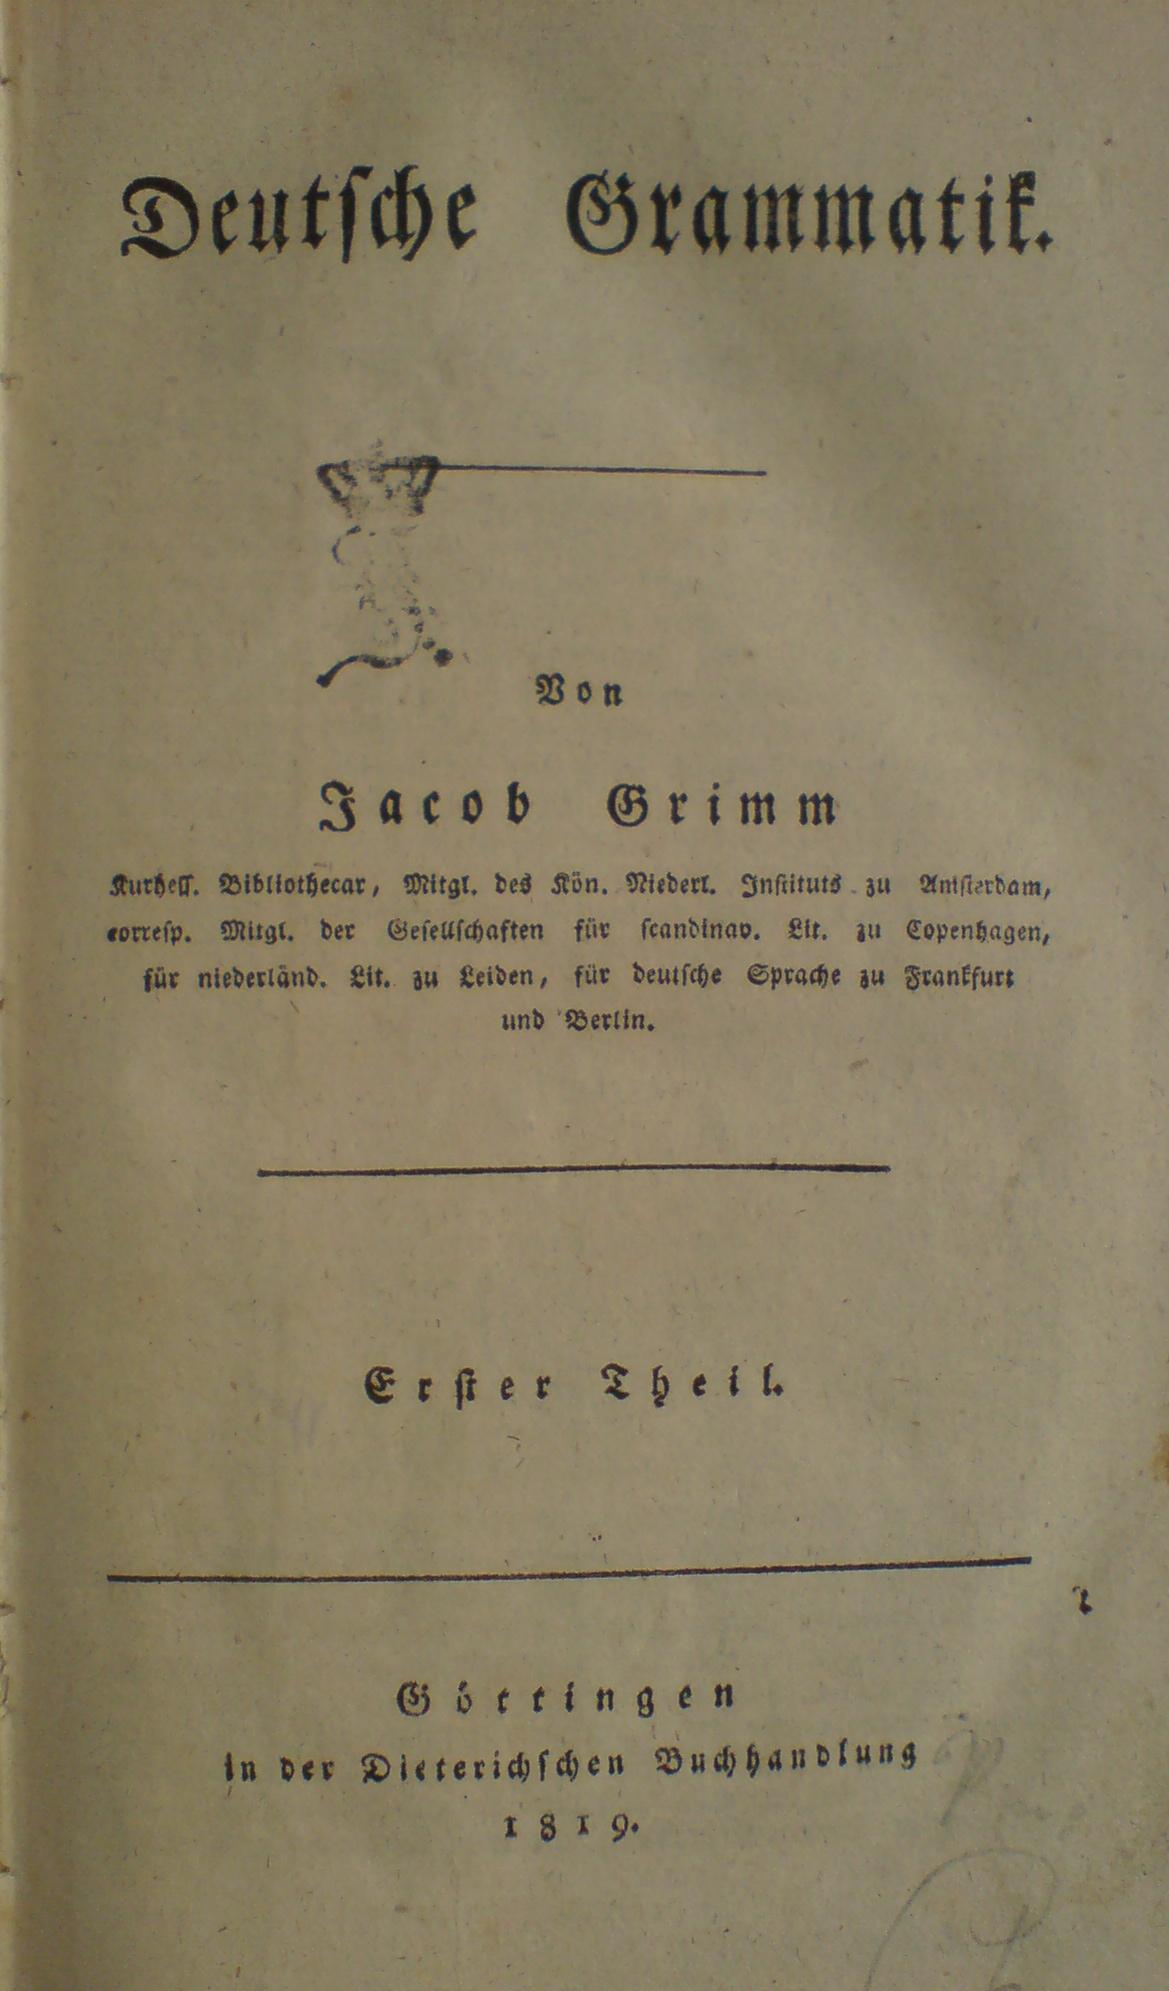 Jacob Grimm, "Deutsche Grammatik", 1819